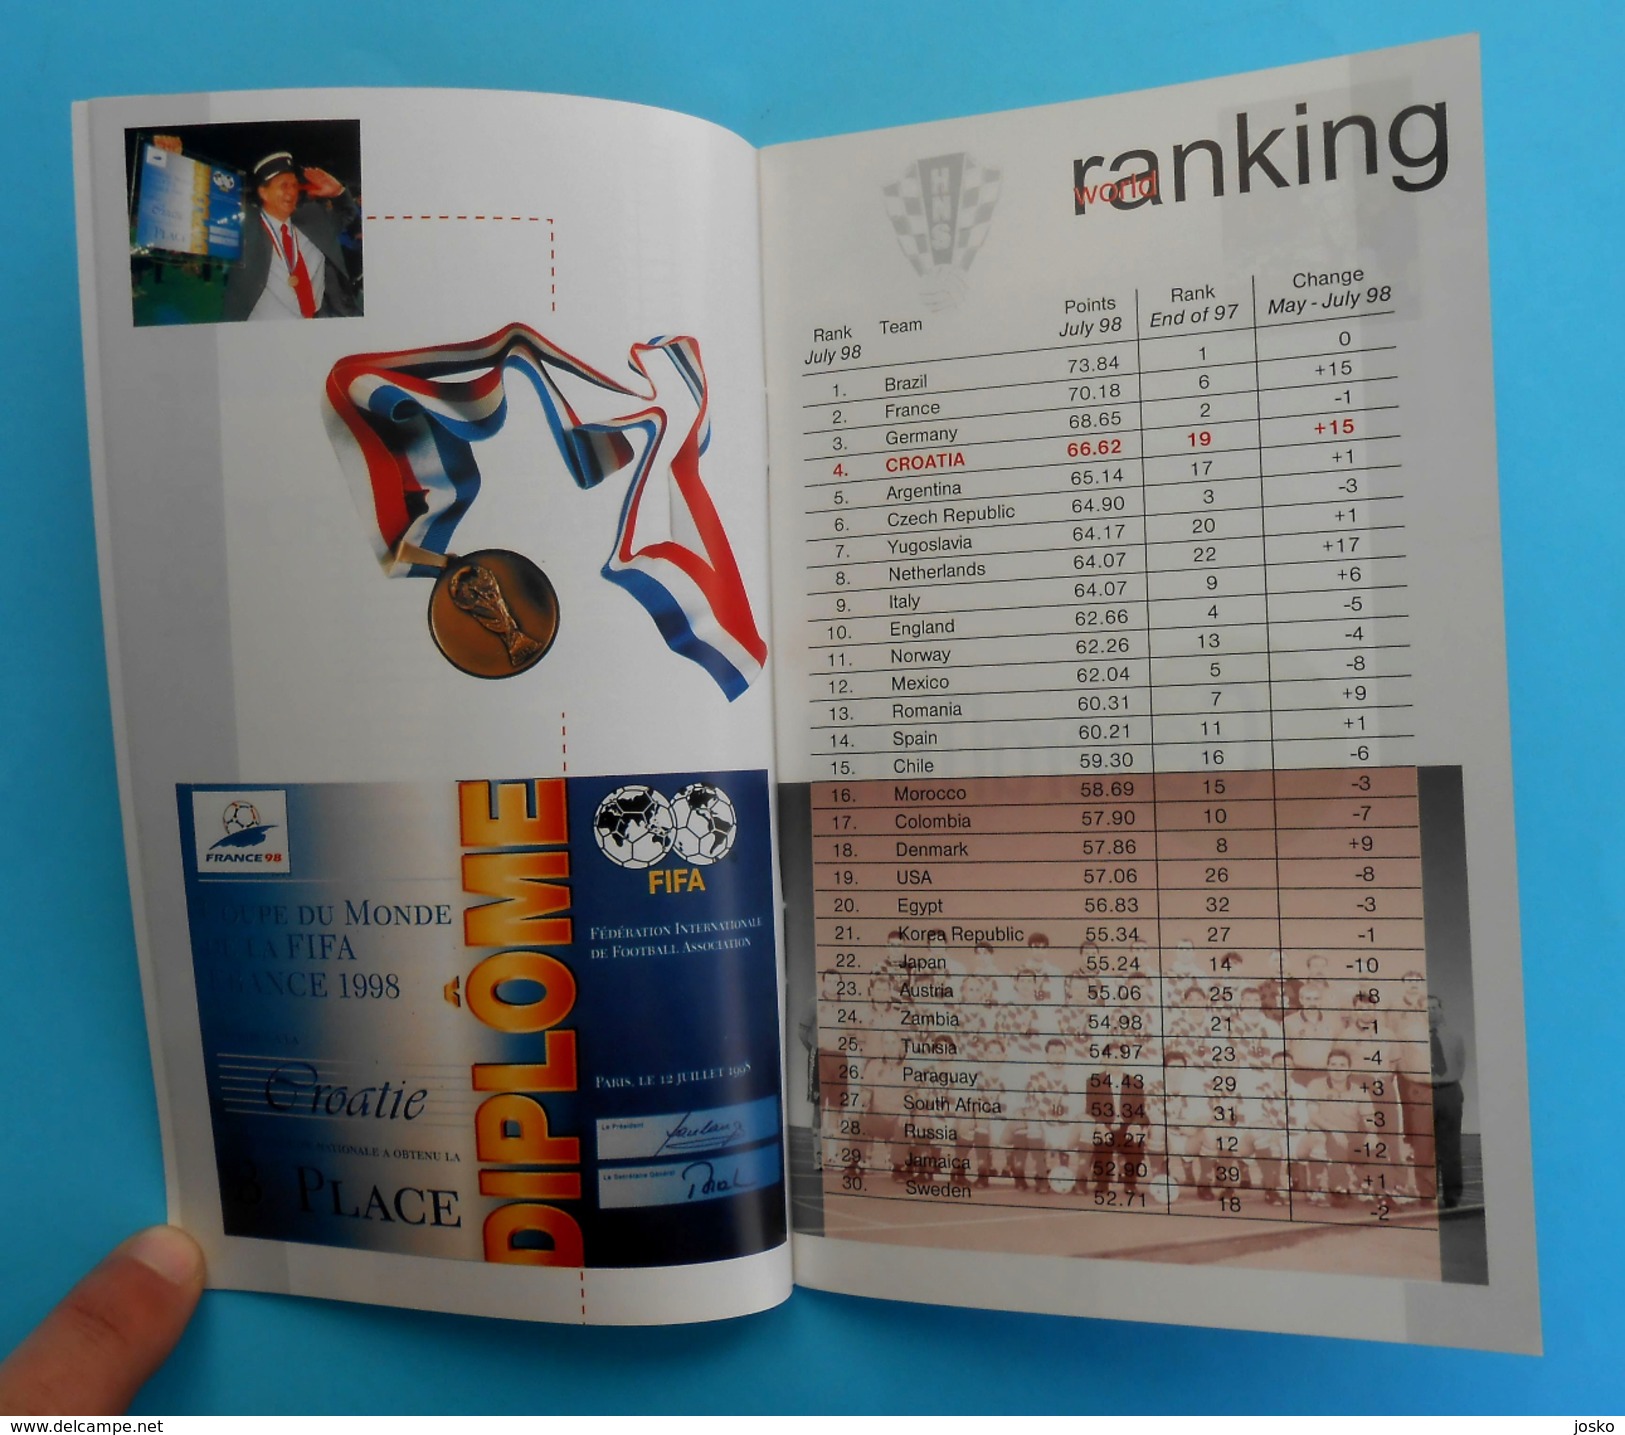 UEFA EURO 2000 - CROATIA TEAM Programme & Guide * Football Soccer Fussball Programm Programma Kroatien Croatie Croazia - Bücher